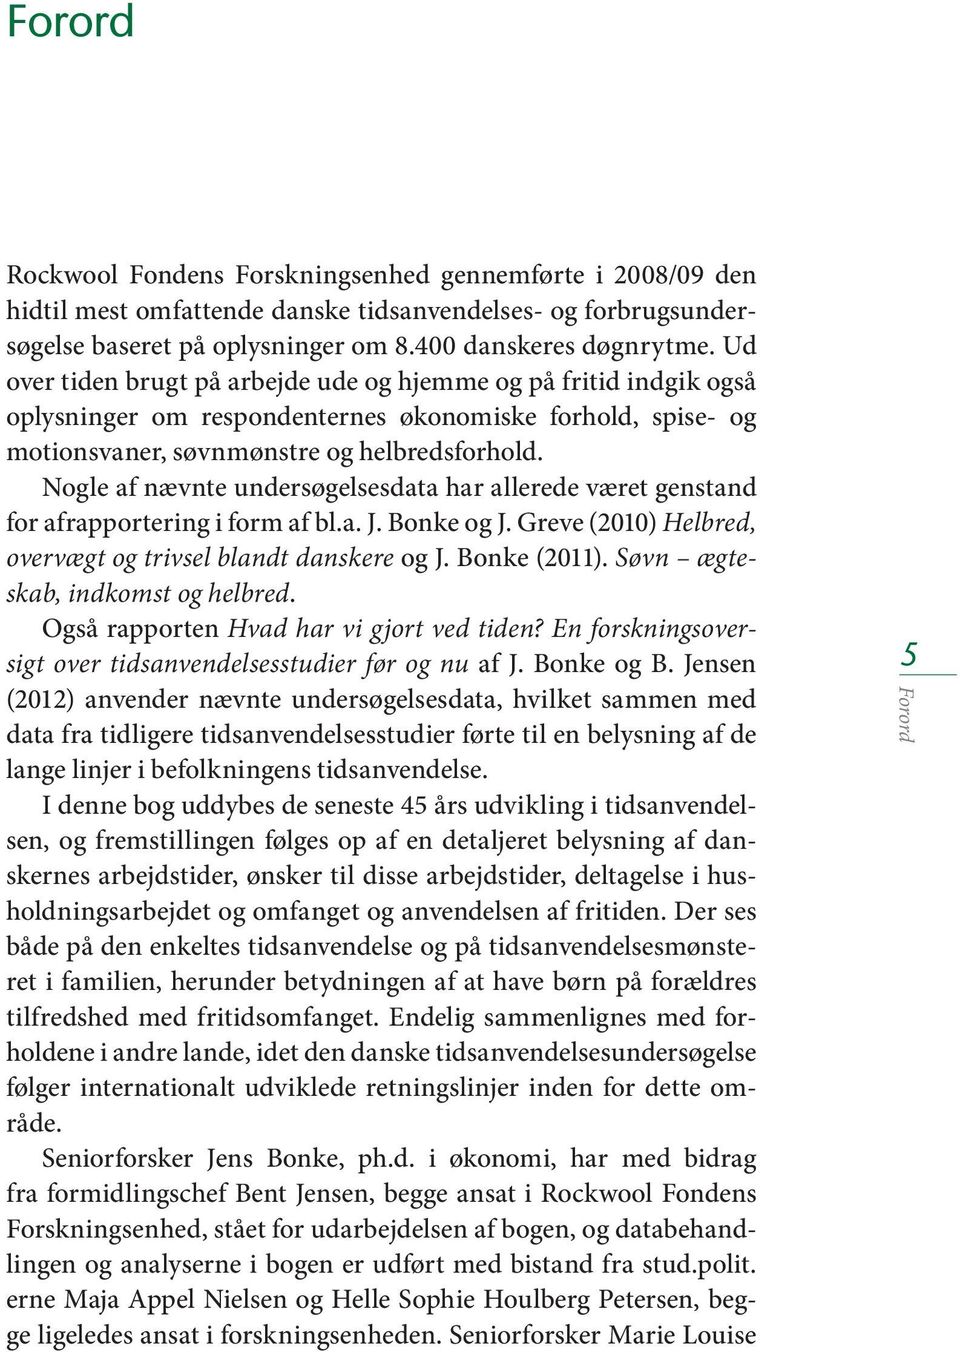 Nogle af nævnte undersøgelsesdata har allerede været genstand for afrapportering i form af bl.a. J. Bonke og J. Greve (2010) Helbred, overvægt og trivsel blandt danskere og J. Bonke (2011).